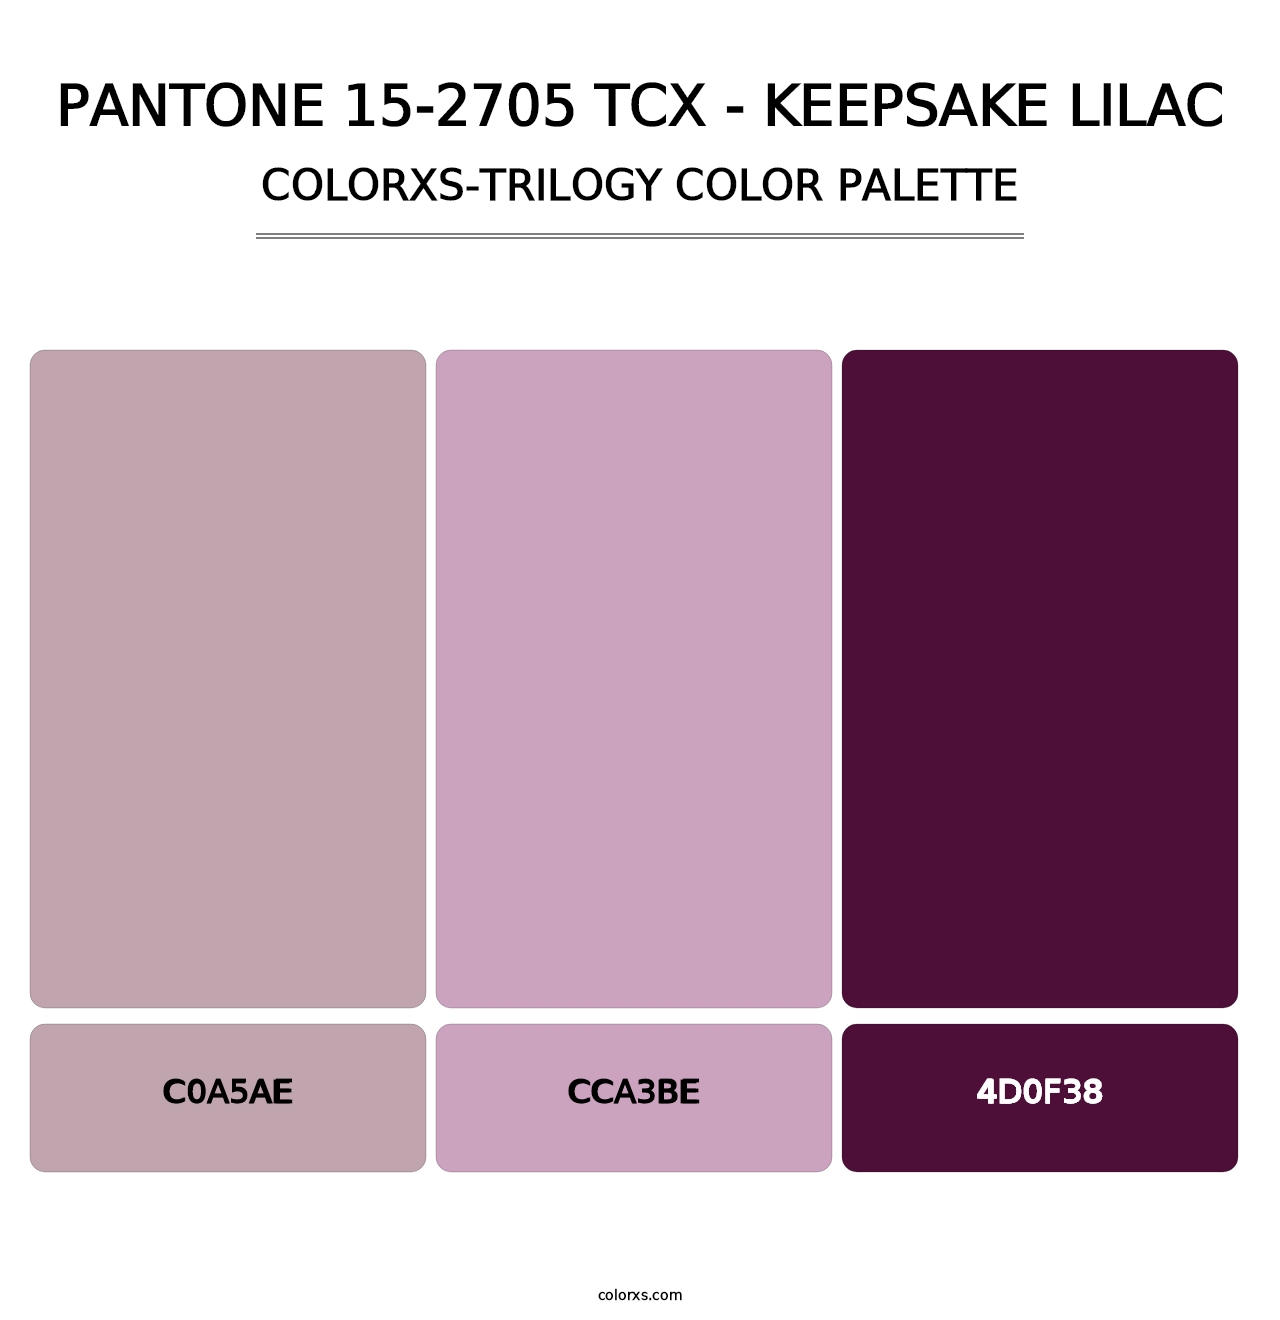 PANTONE 15-2705 TCX - Keepsake Lilac - Colorxs Trilogy Palette